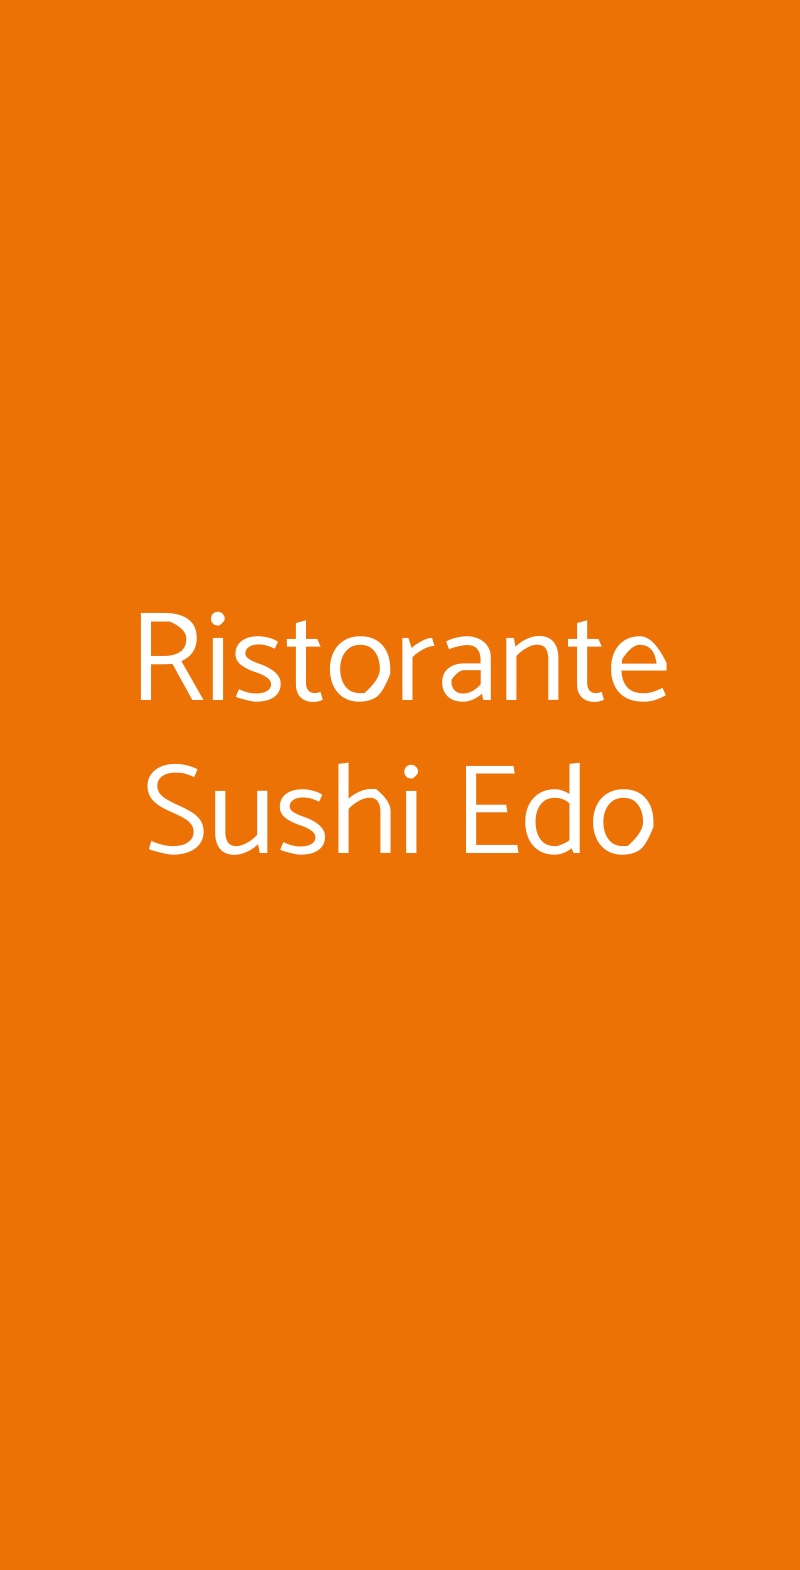 Ristorante Sushi Edo Bresso menù 1 pagina